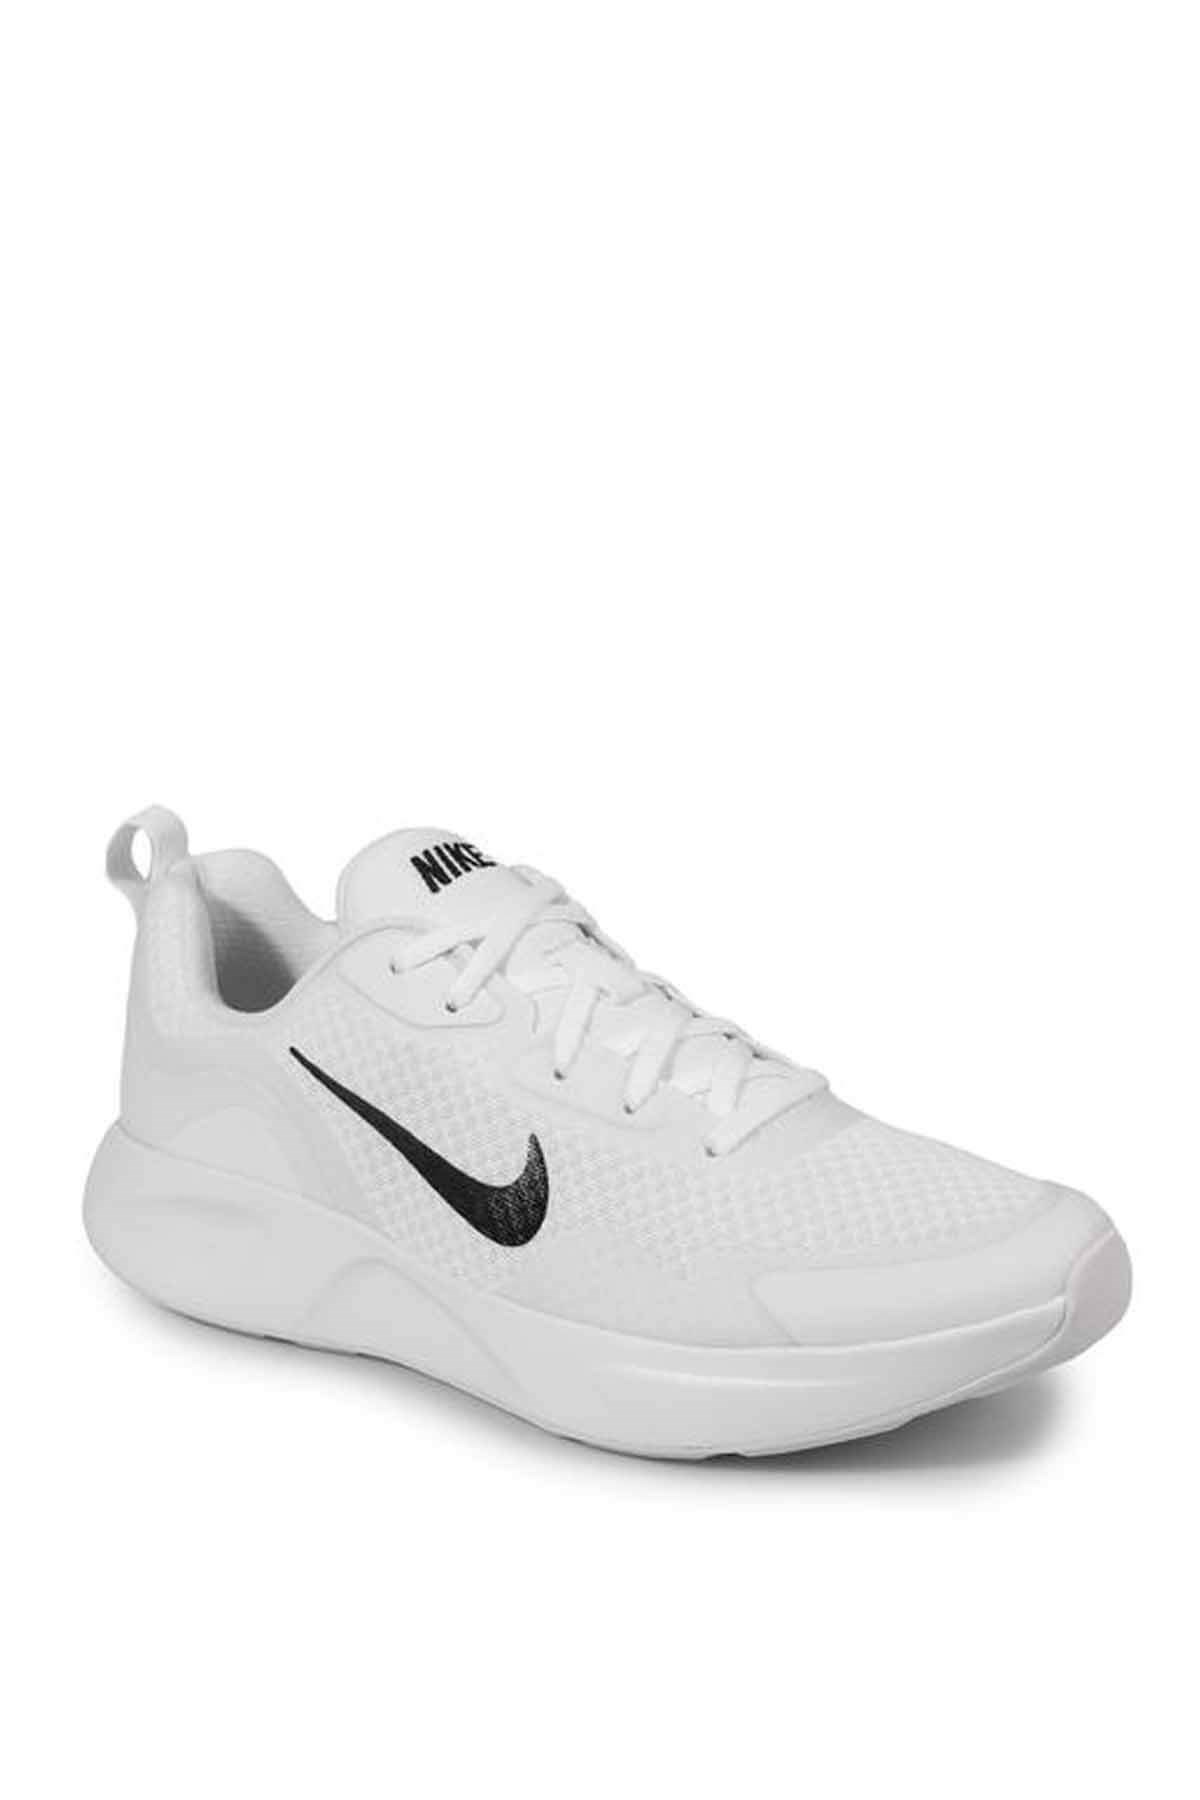 Nike Wearallday Erkek Günlük Spor Ayakkabı CJ1682-101-Beyaz -  CJ1682-101Beyaz - NIKE - Spor Ayakkabı - Spor Giyim - Çanta - Aksesuar |  sahilspor.com